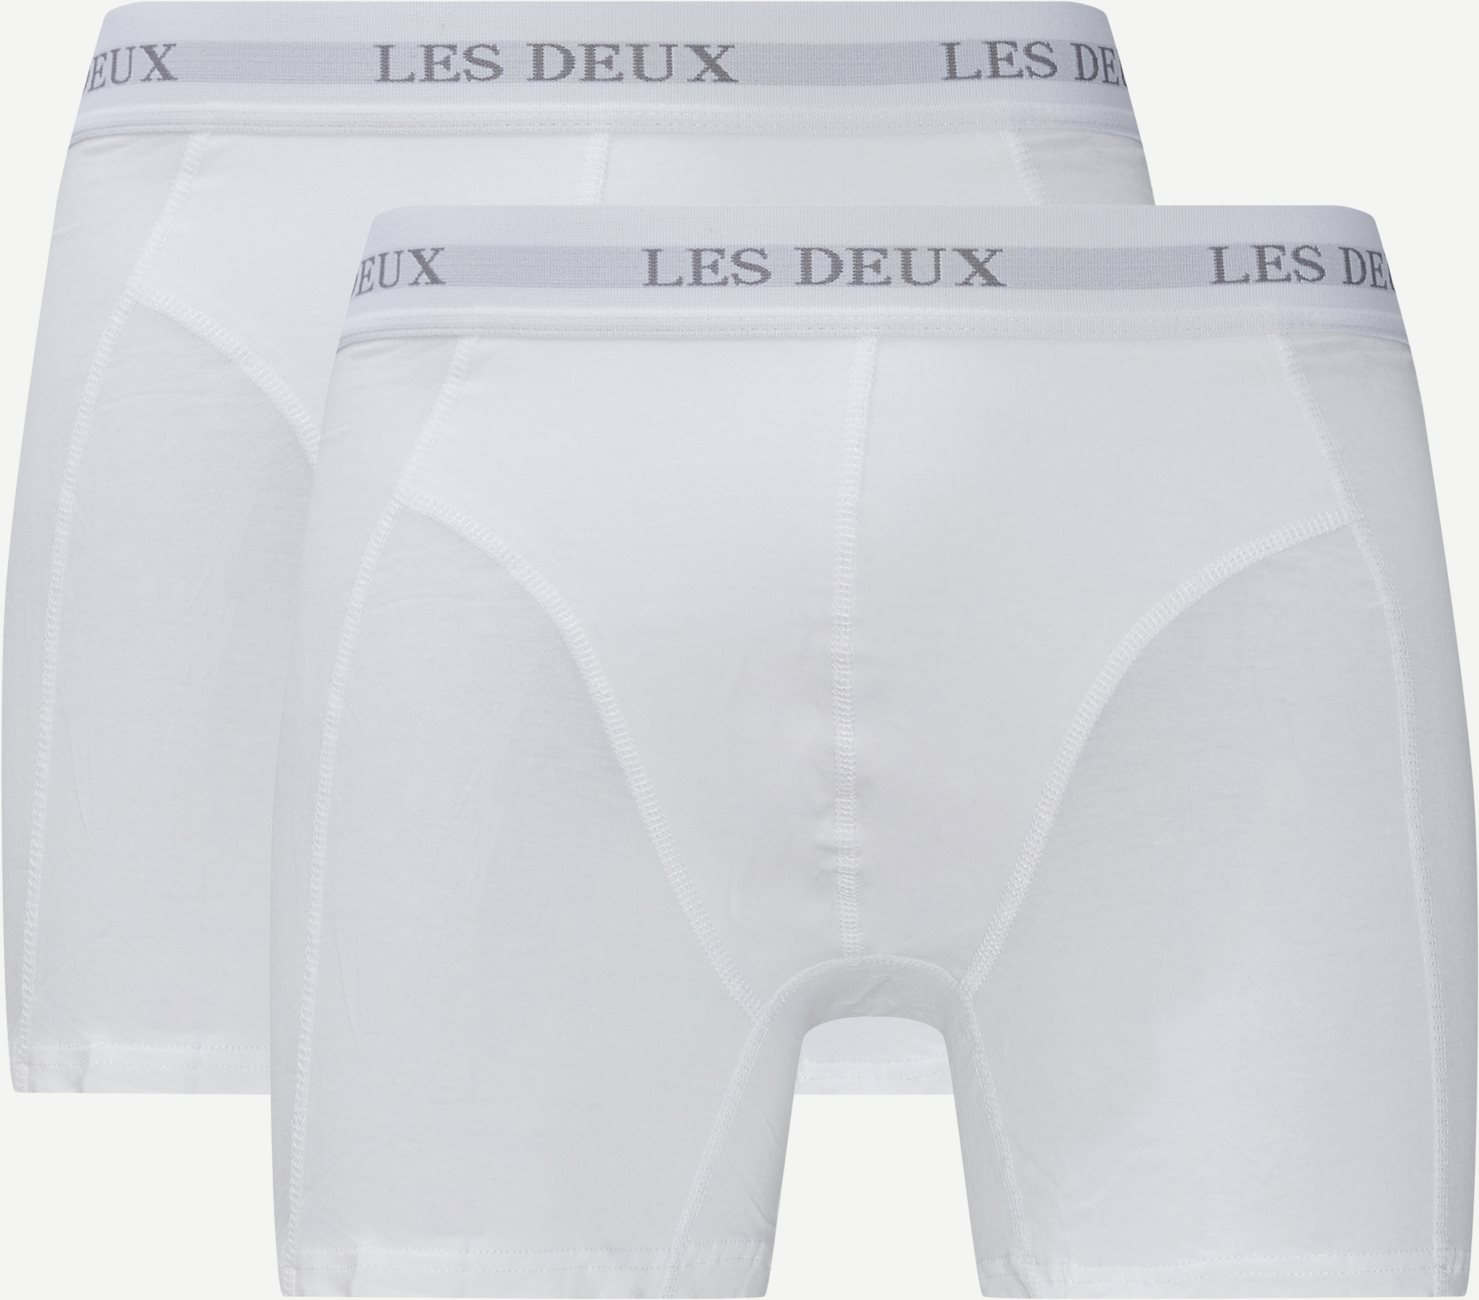 Les Deux Underwear WARREN 2 PACK BOXERS White